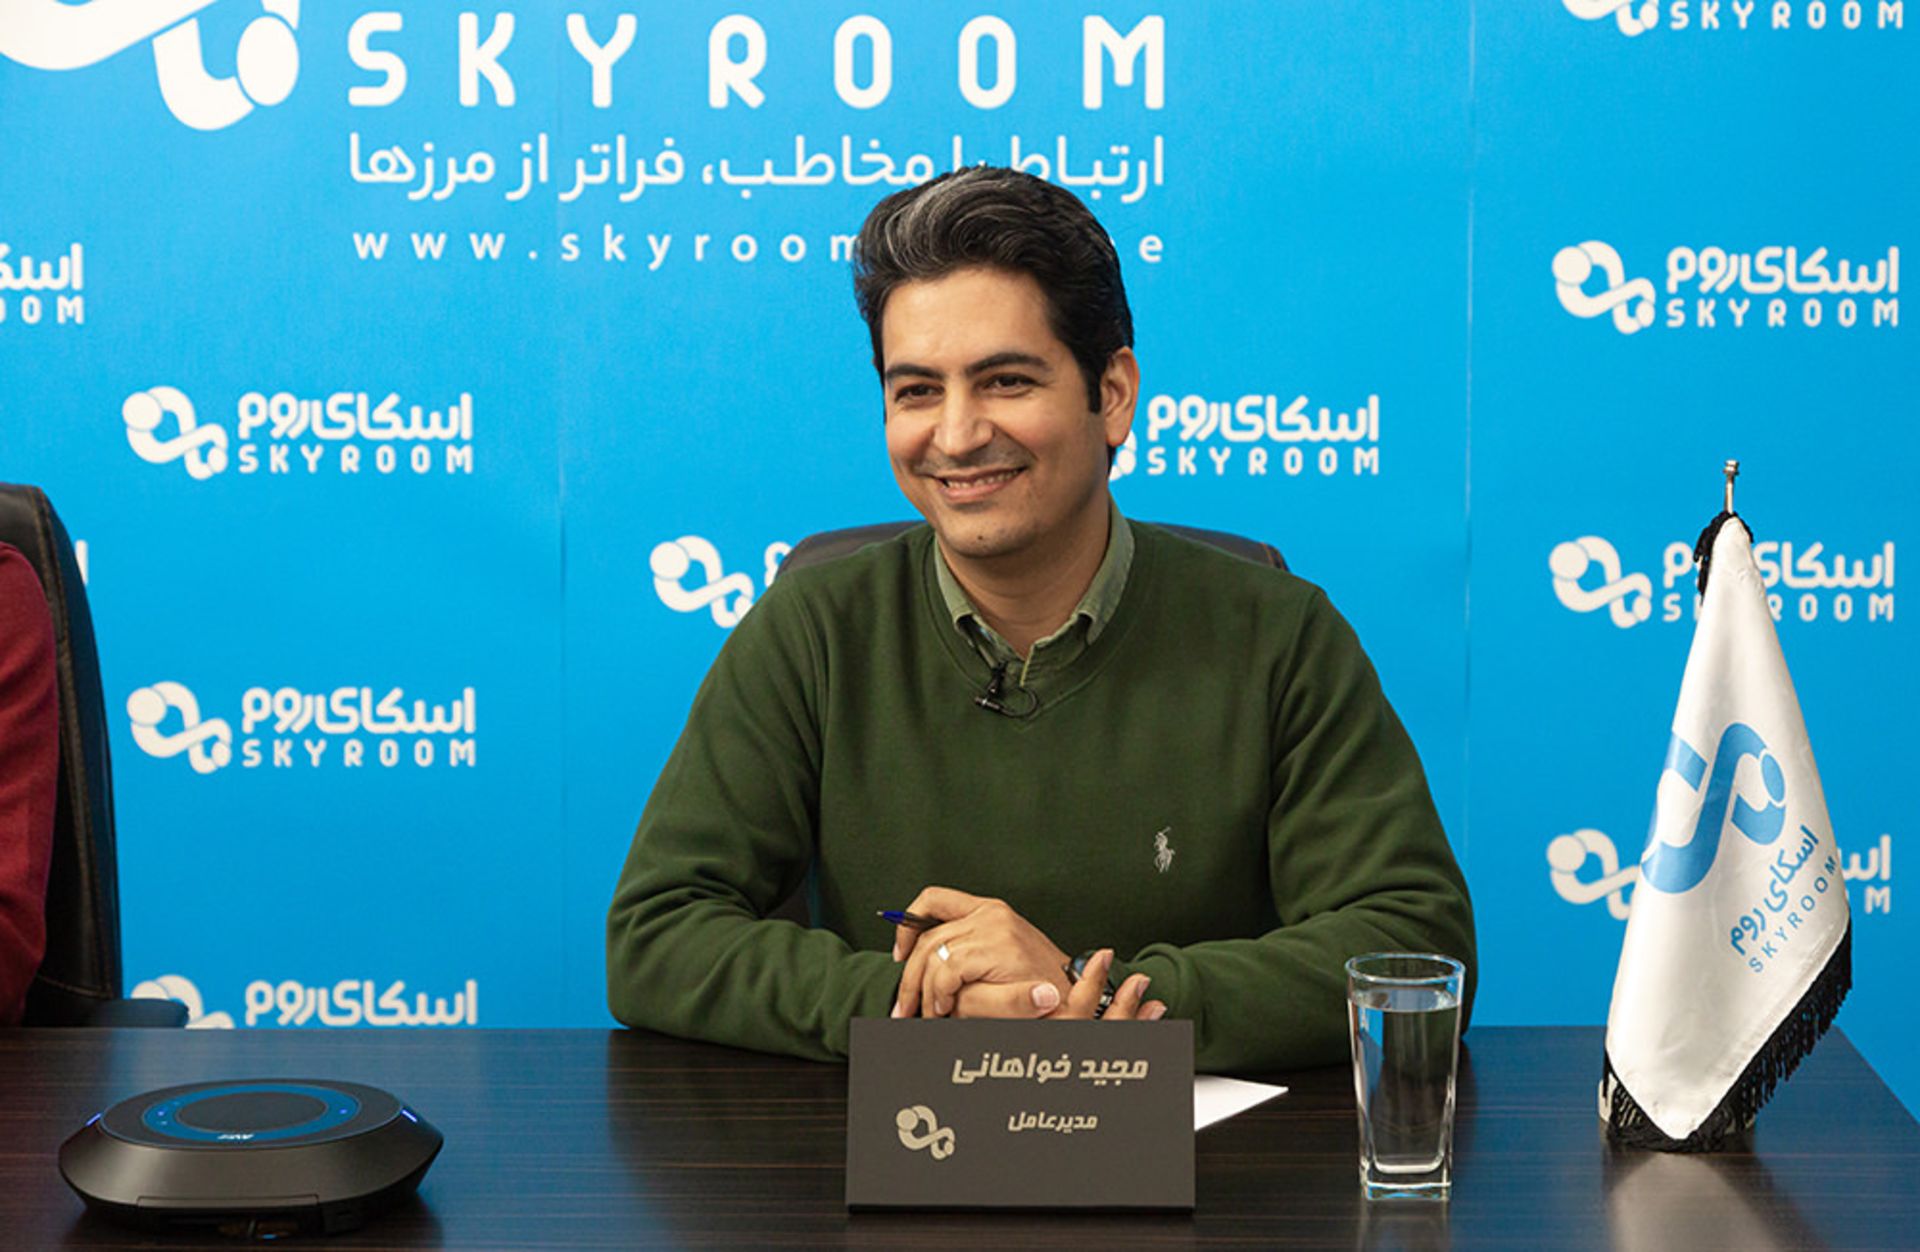 مجید خواهانی، مدیرعامل اسکای روم